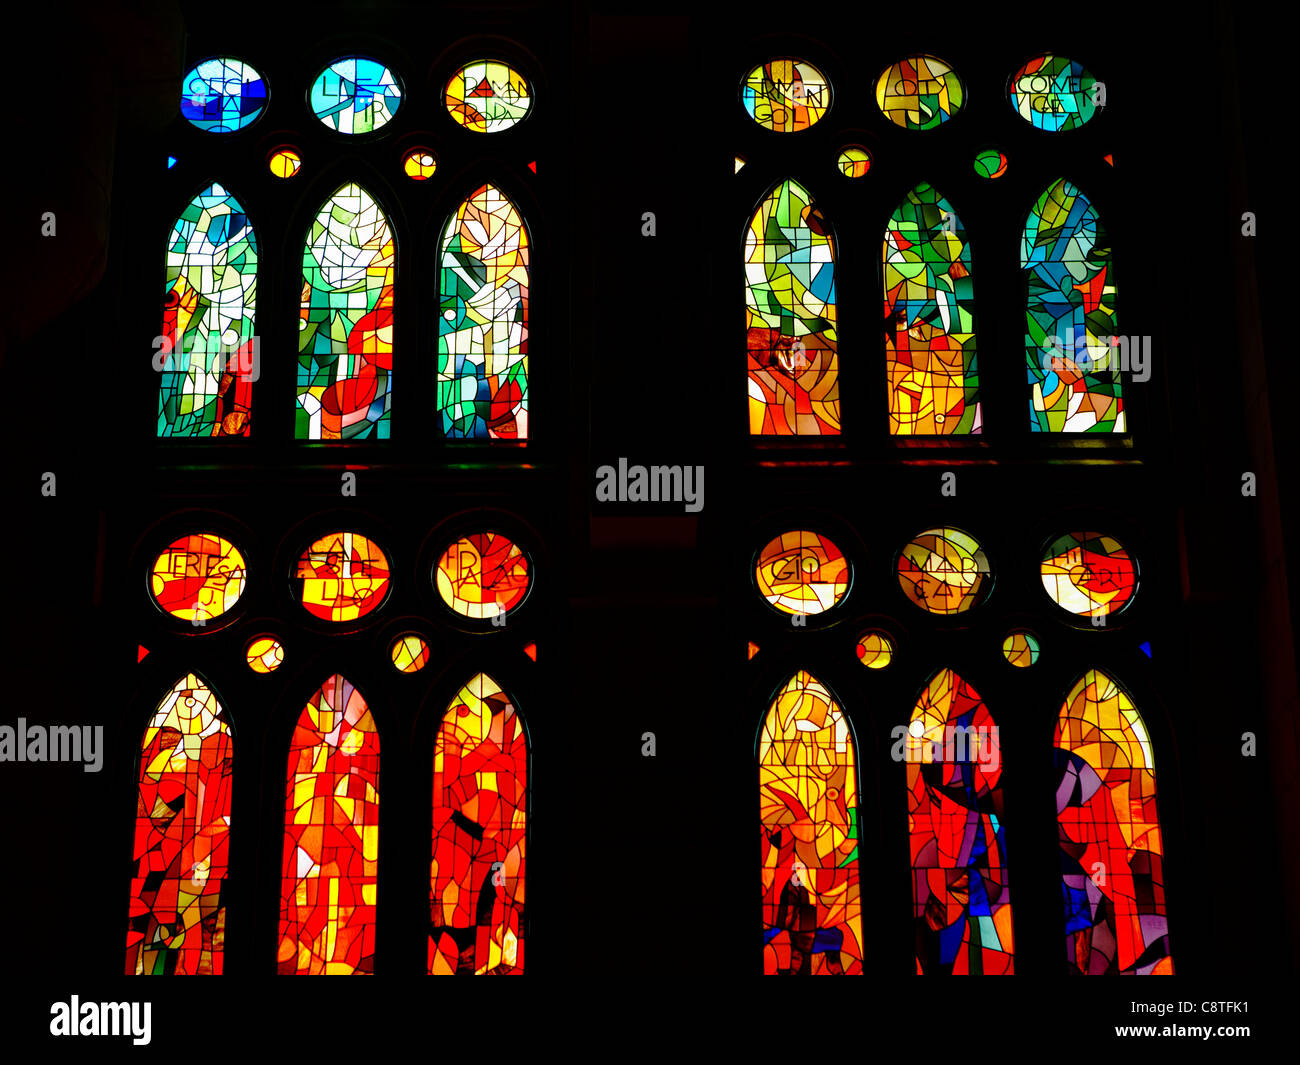 Le finestre di vetro macchiate. Chiesa della Sagrada Familia, o chiesa espiatorio della Santa Famiglia, Barcellona, in Catalogna, Spagna. Foto Stock